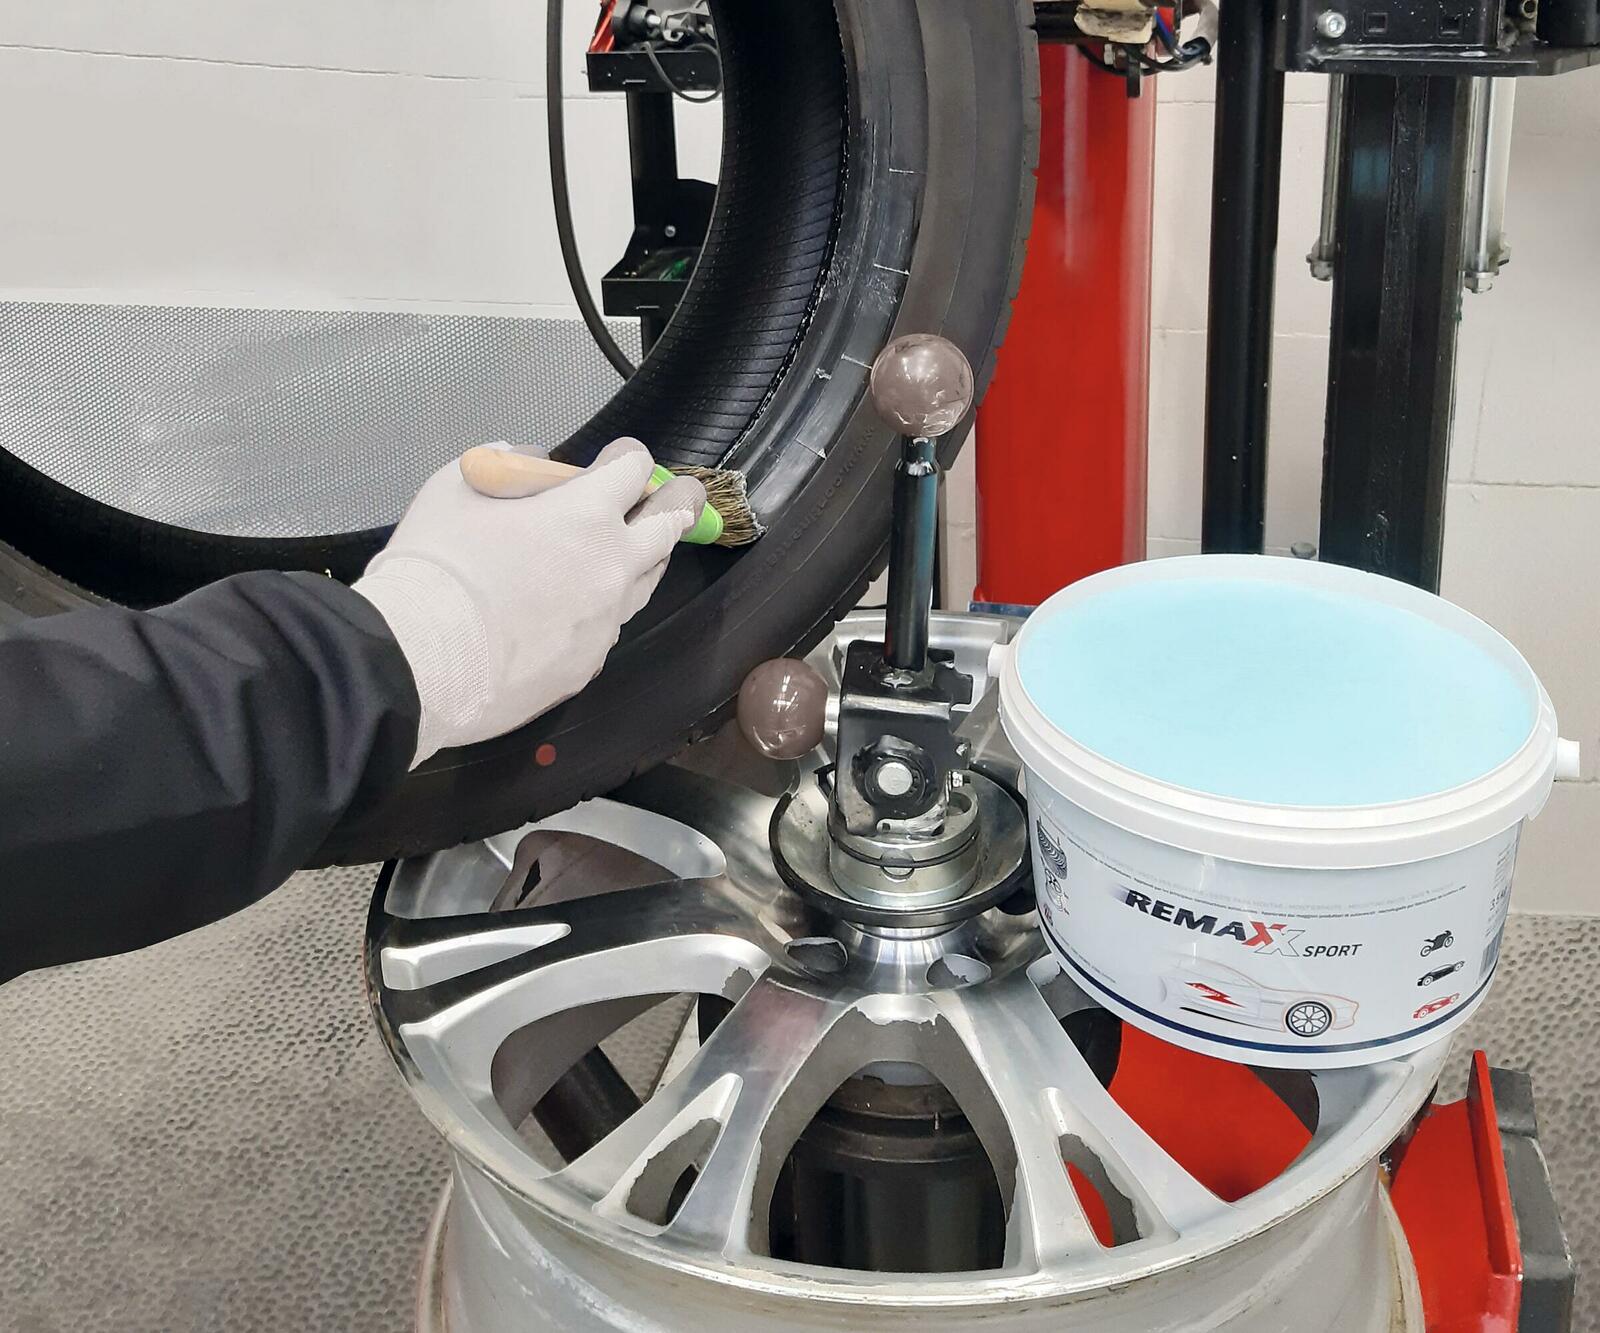 Bewährte Reifen-Montagepaste Remaxx Sport soll nun auch die E-Mobilität bereichern.